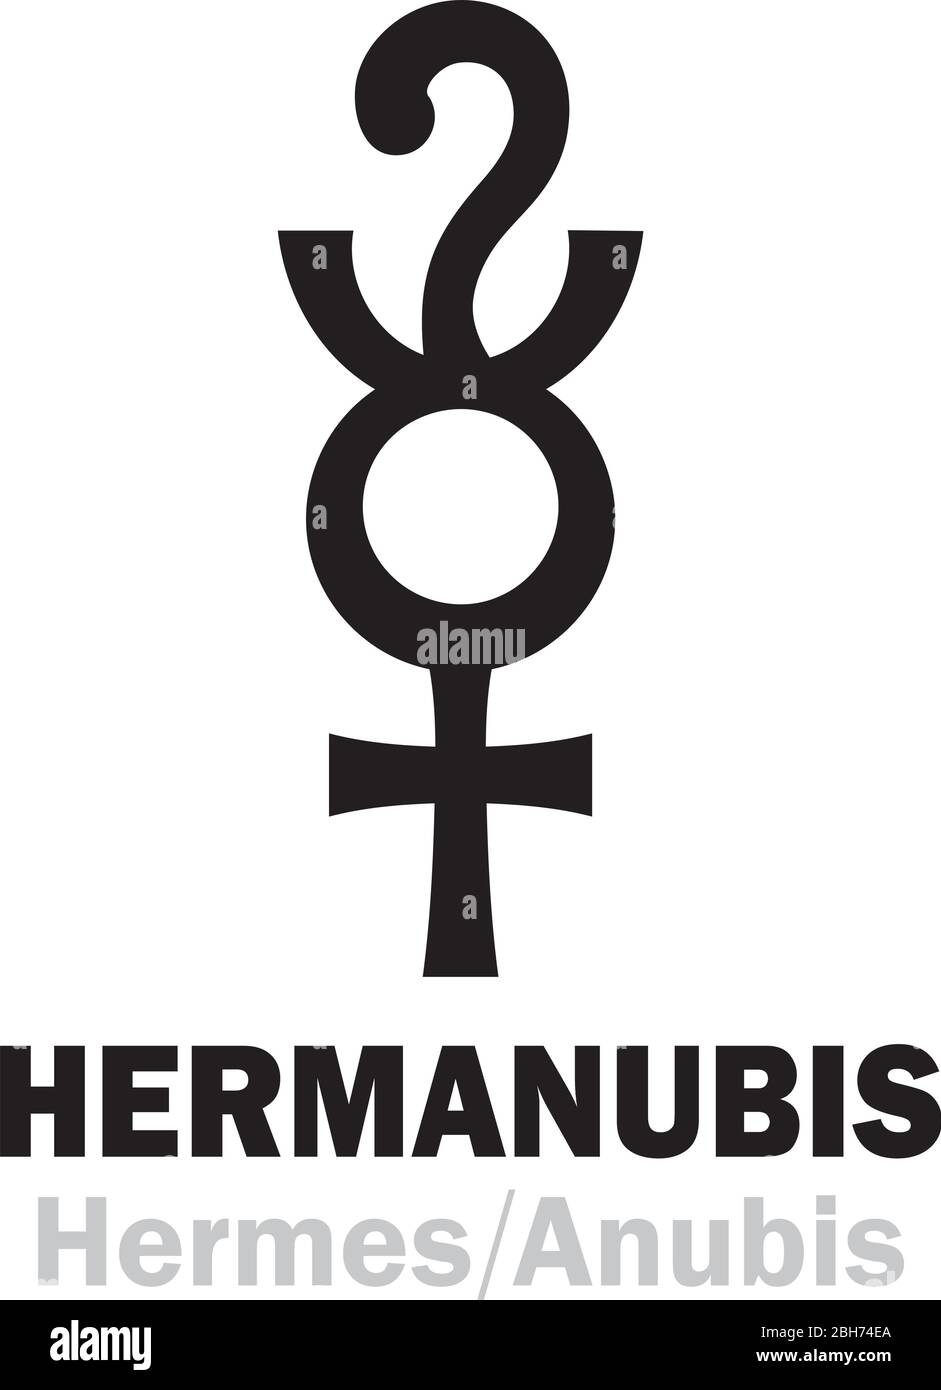 Astrologie-Alphabet: HERMANUBIS (Hermes+Anubis), die griechisch-ägyptische synkretische Gottheit der Wahrheit, der Leiter der Seelen in die Unterwelt. Hieroglyphen. Stock Vektor